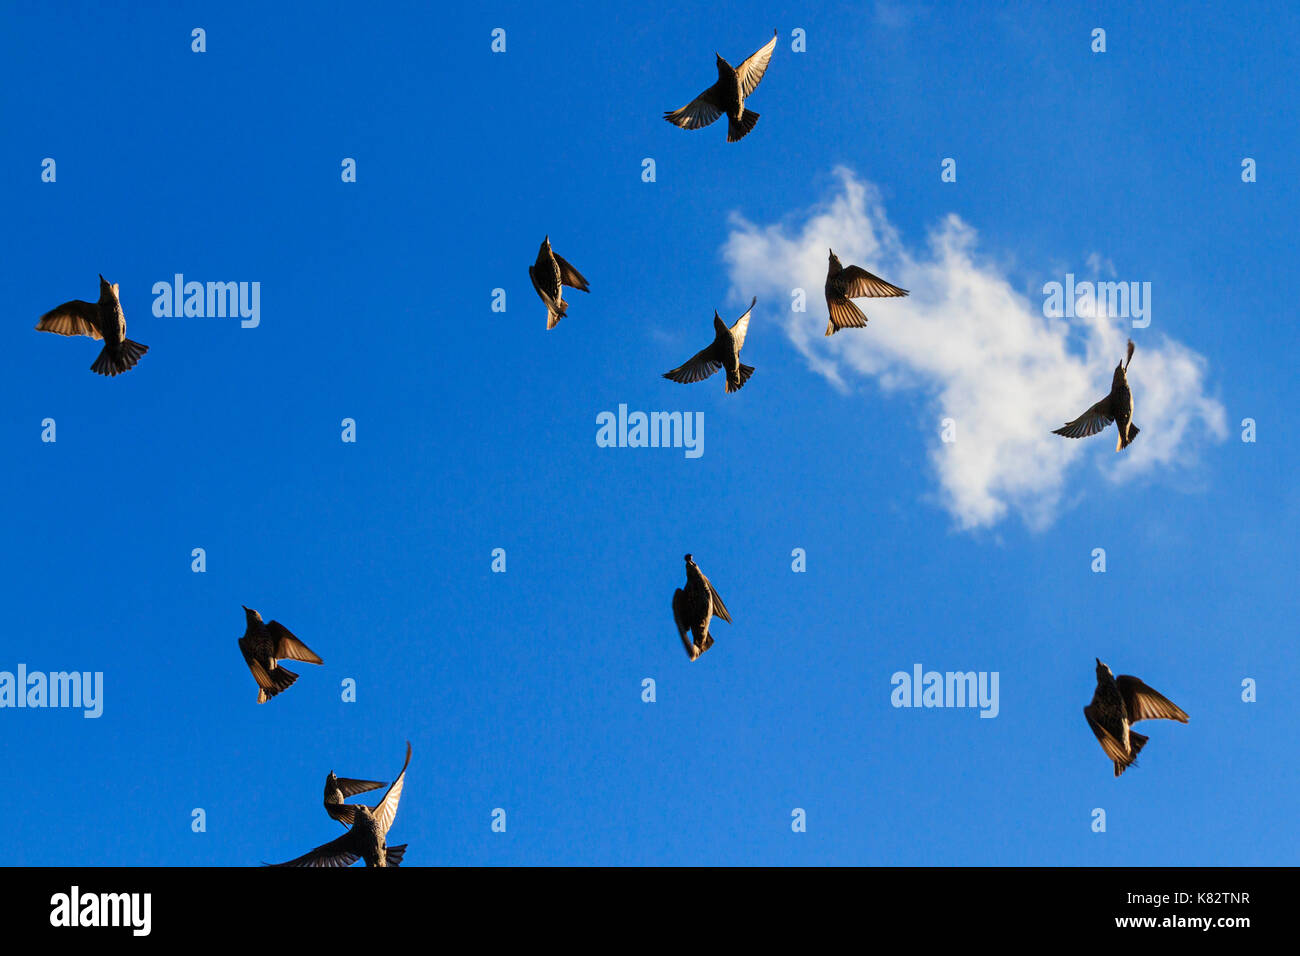 Stare in den blauen Himmel minimalistische Malerei fliegen, die Tier- und Pflanzenwelt, einzigartige Frames Stockfoto